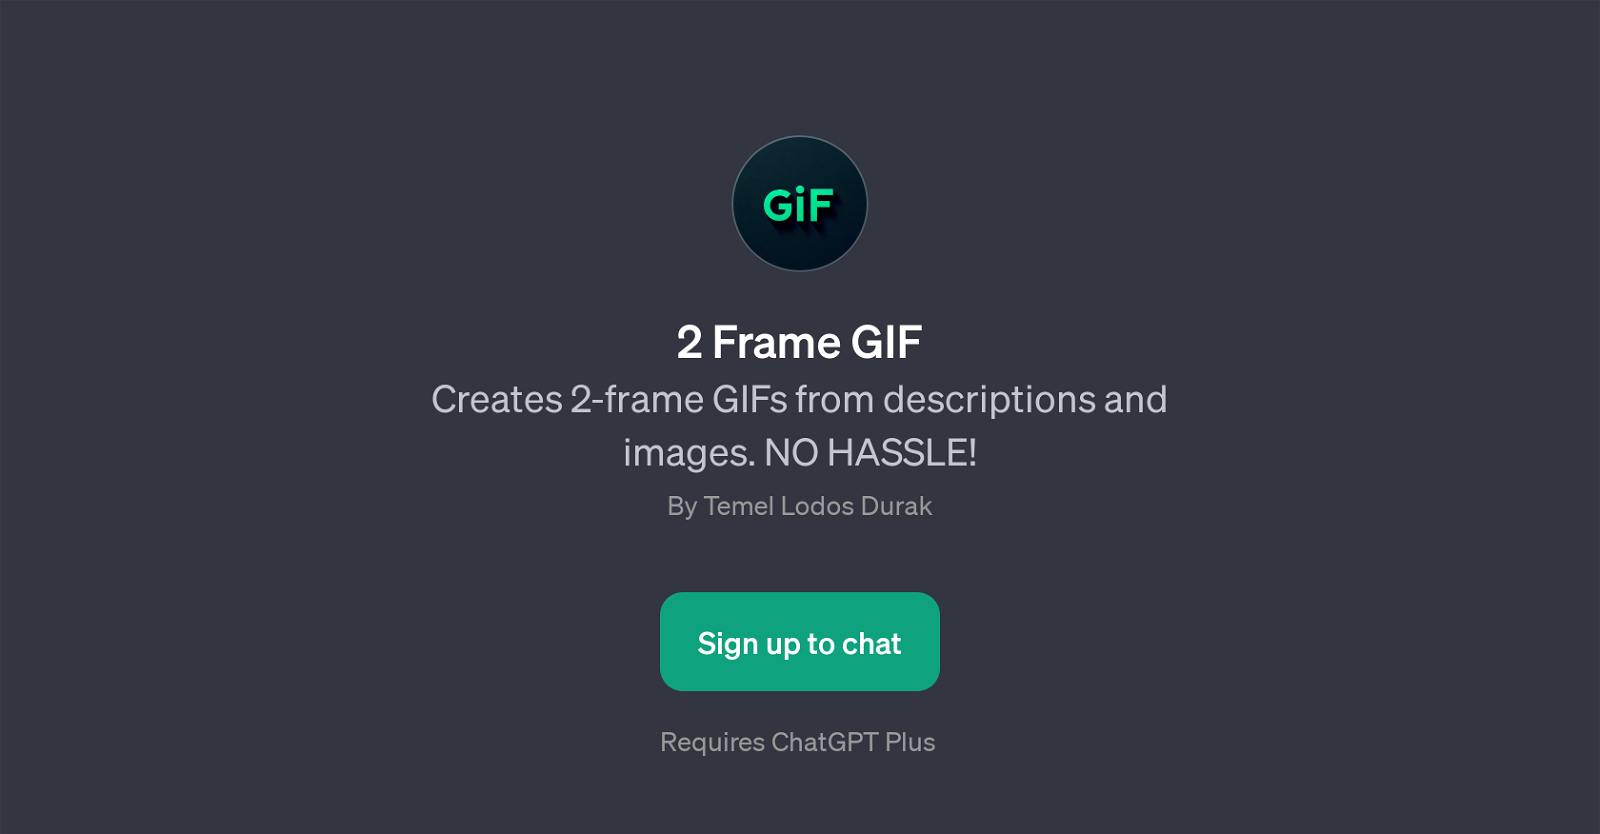 2 Frame GIF website